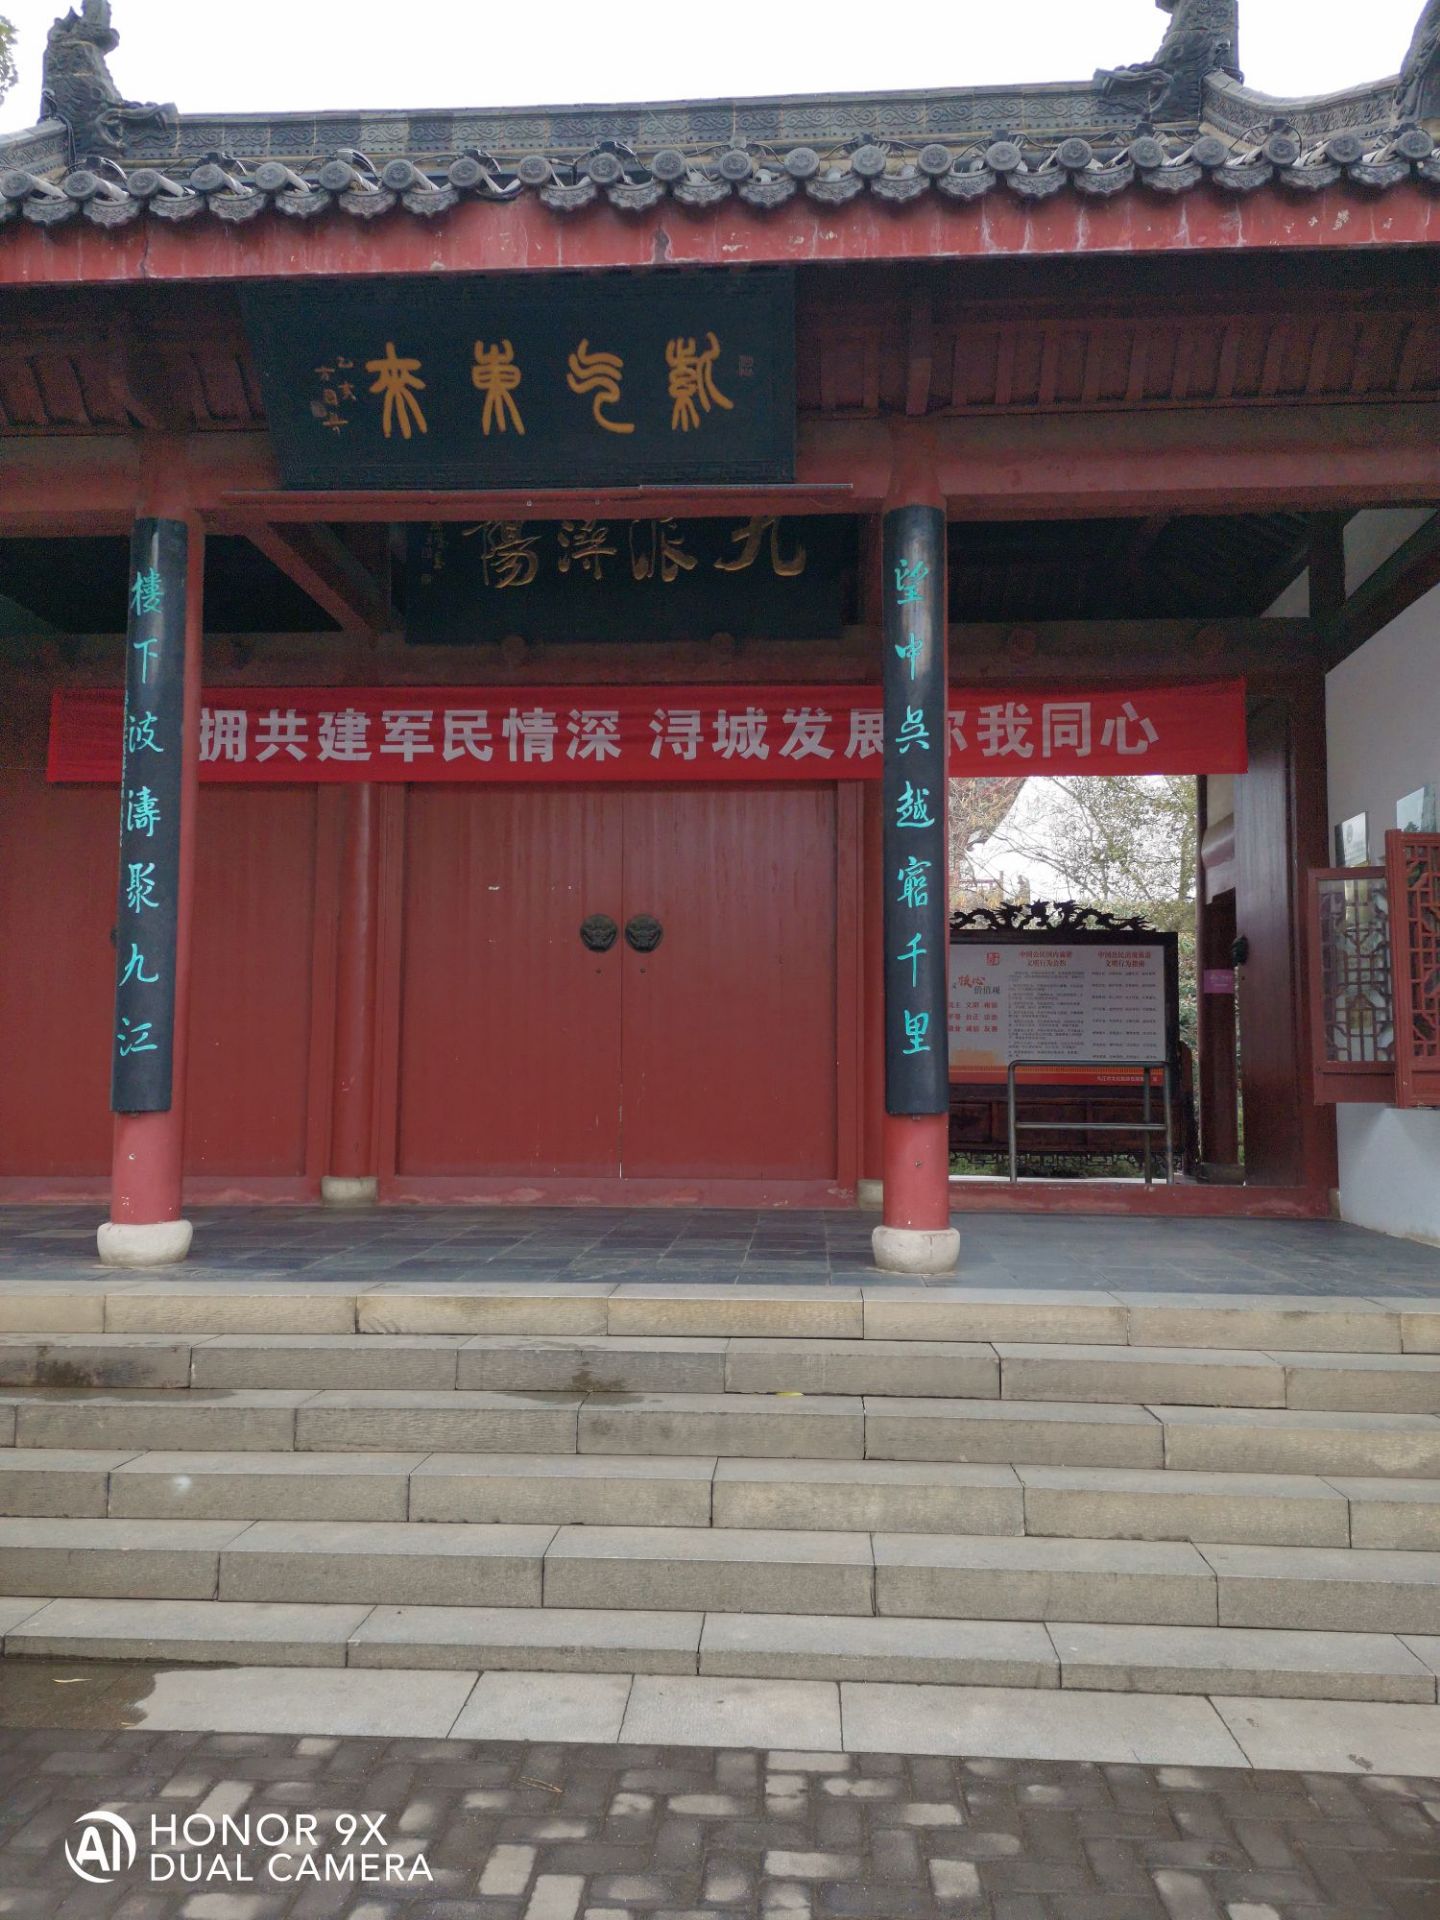 锁江楼  ，锁江楼，位于江西省九江市区东北郊一公里处的长江南岸。这里原有一组古建筑，由江天锁钥楼（即